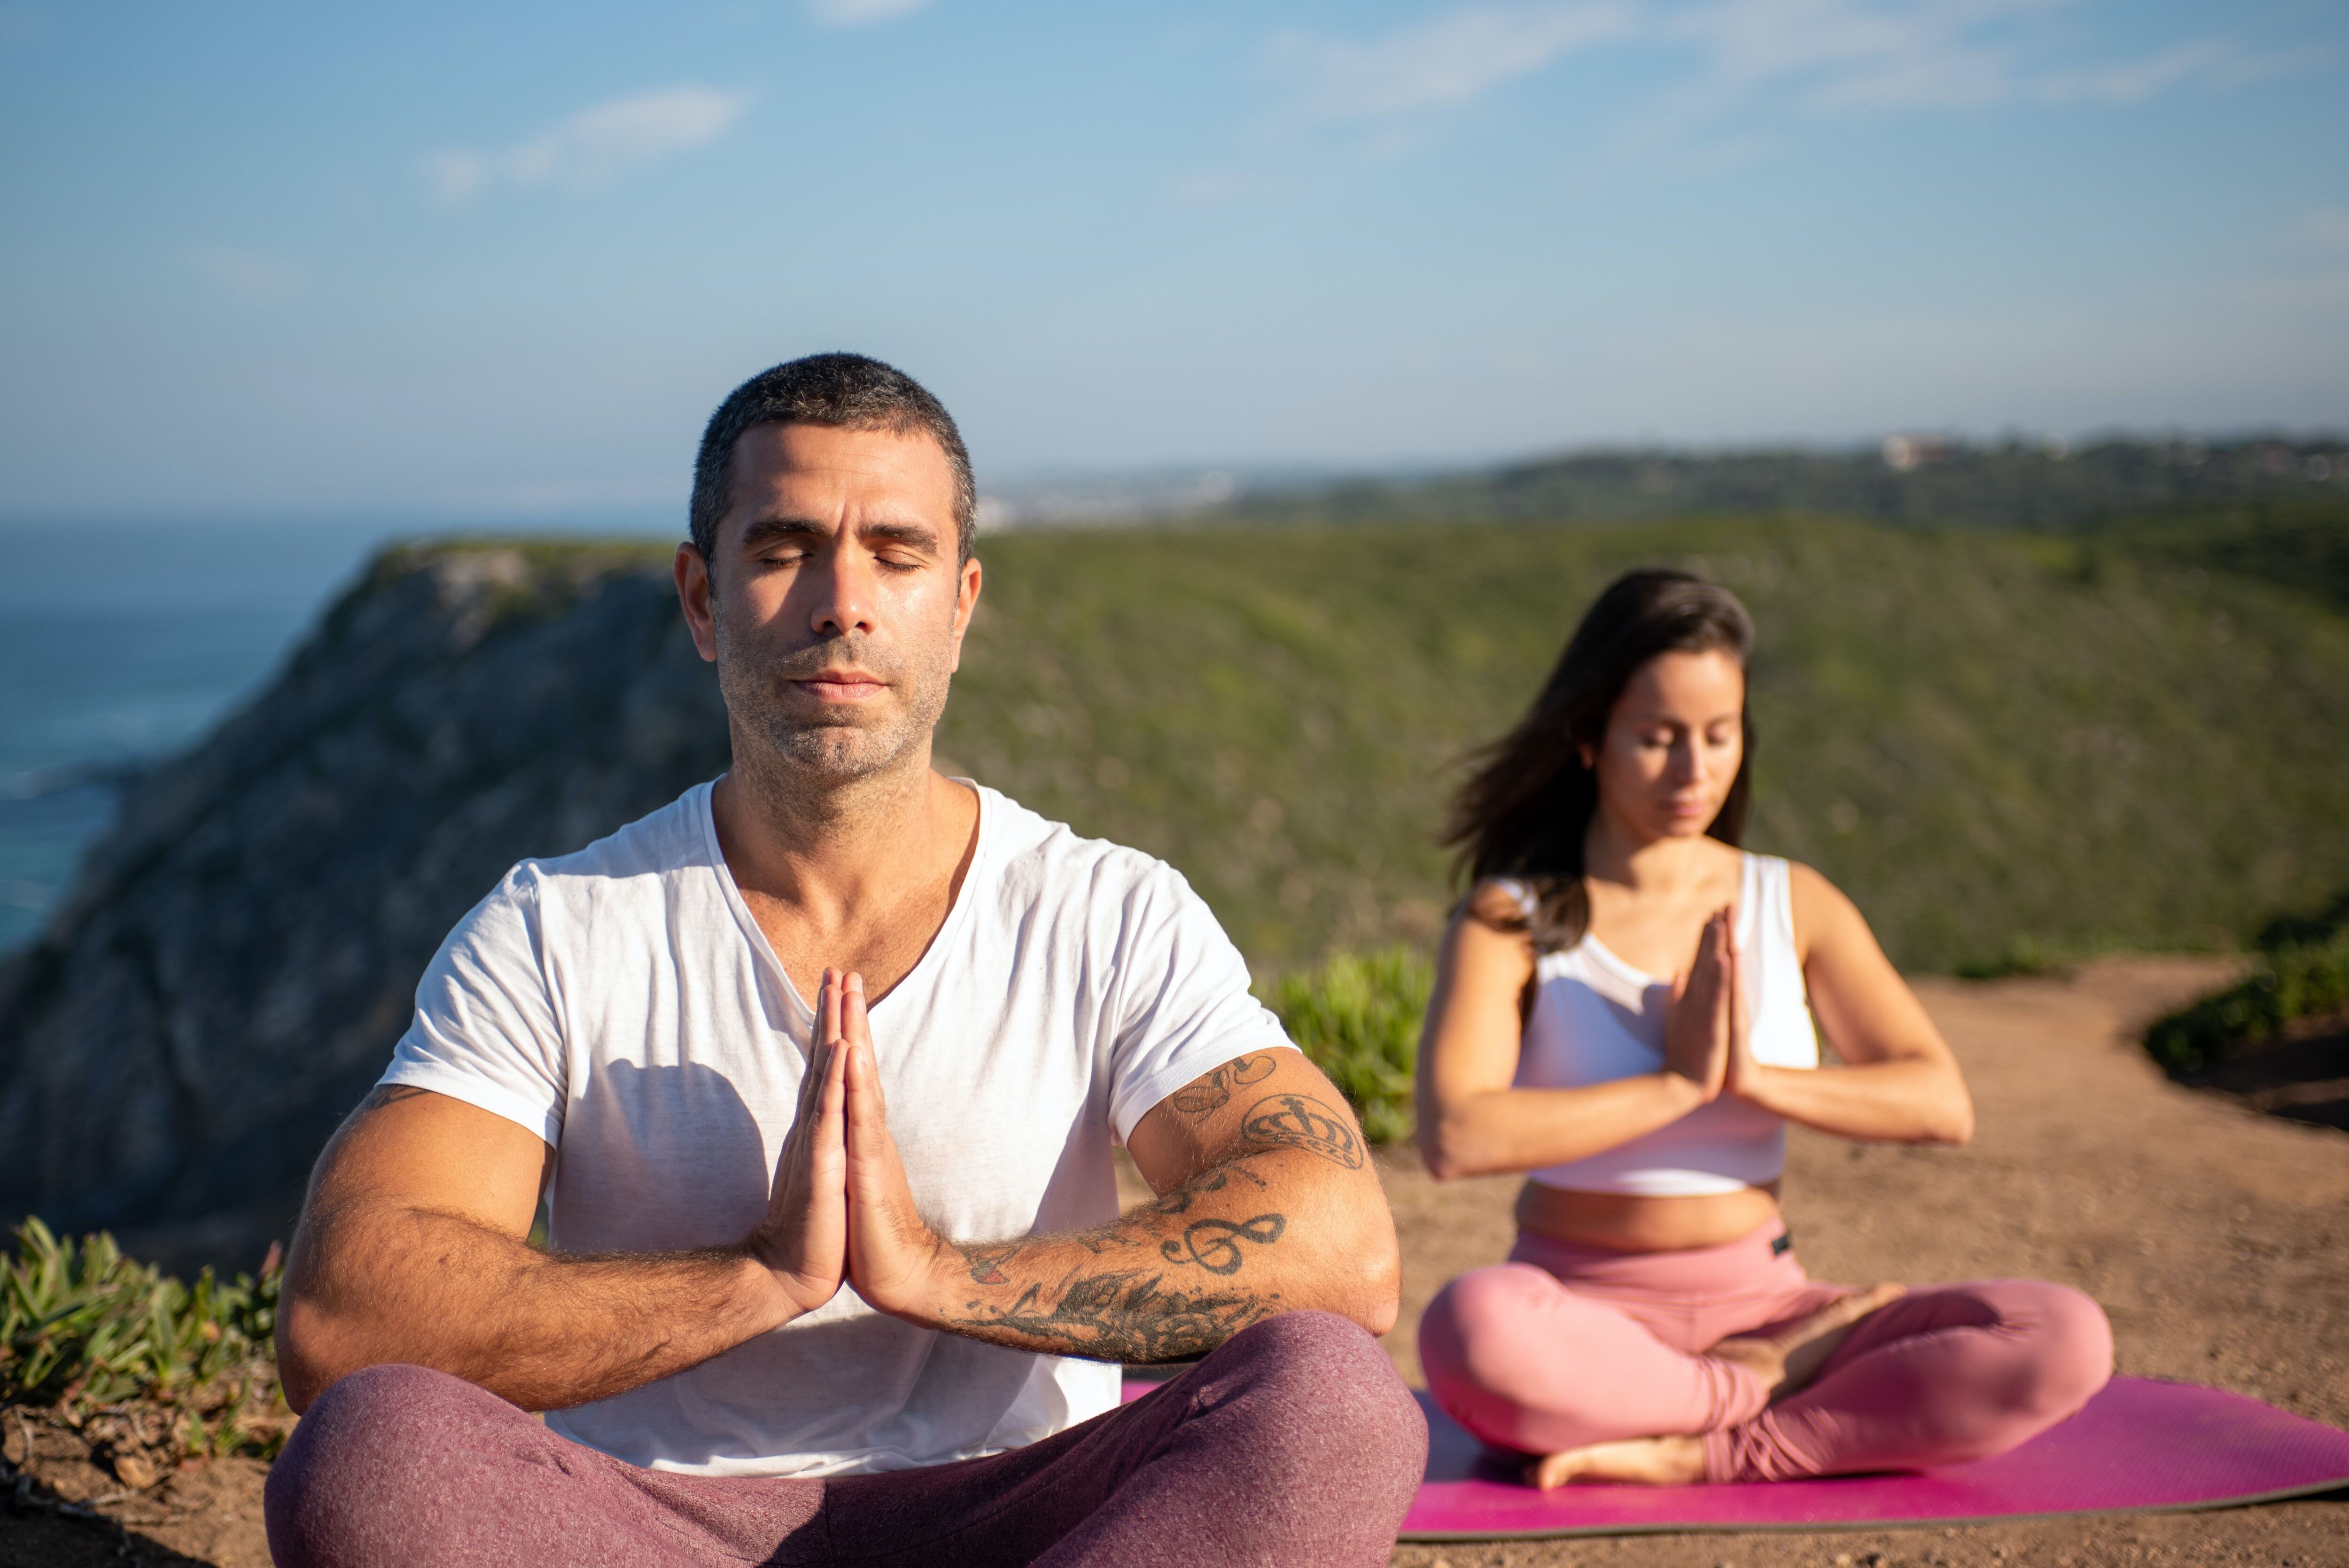 107 millones de personas han visto estos vídeos de yoga